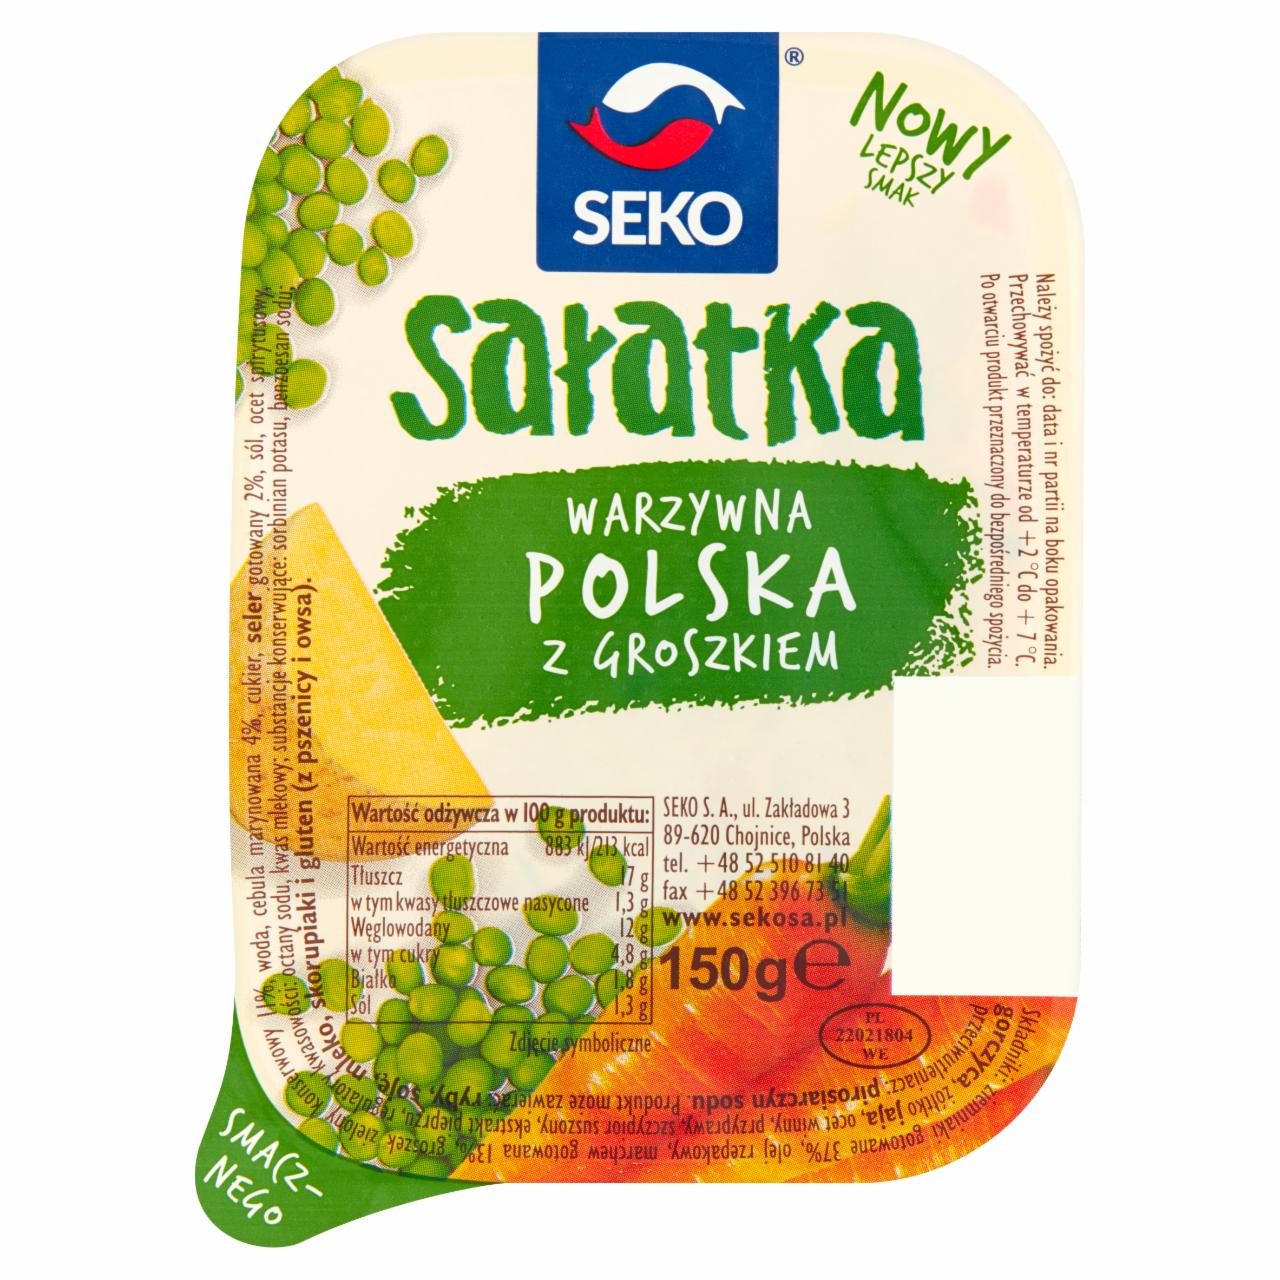 Zdjęcia - Seko Sałatka warzywna polska z groszkiem 150 g